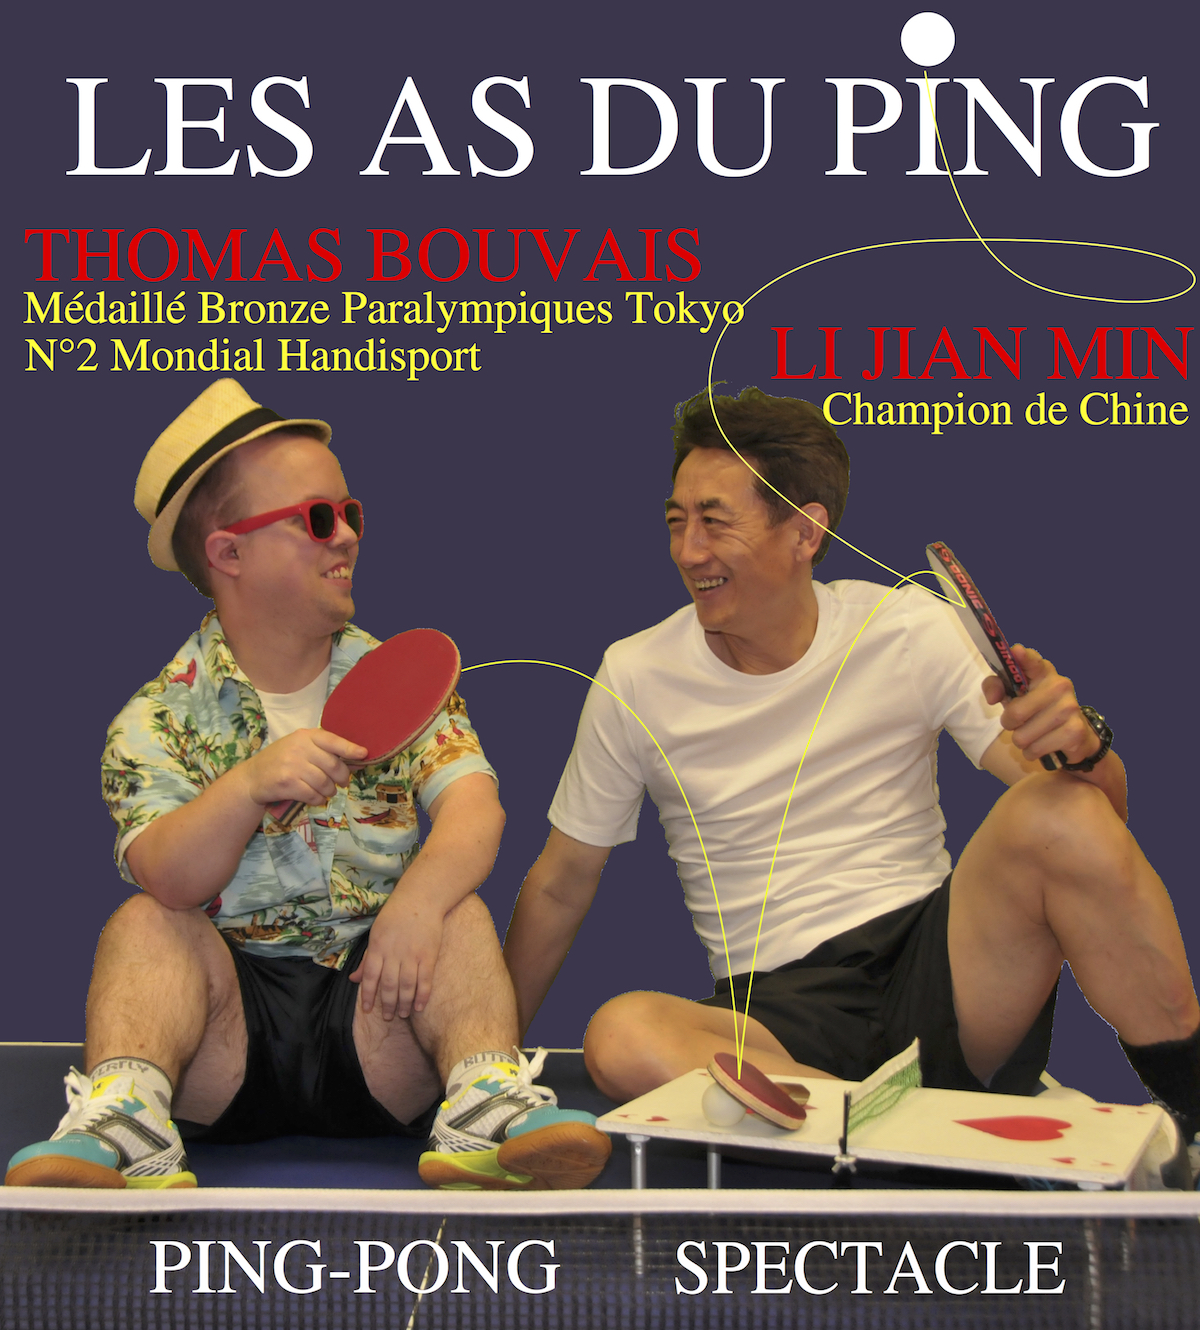 Un voyage à travers le monde en musique et costumes, ou l’on s'amuse à découvrir différentes manières de jouer au ping-pong dans chaque pays visité par notre touriste.